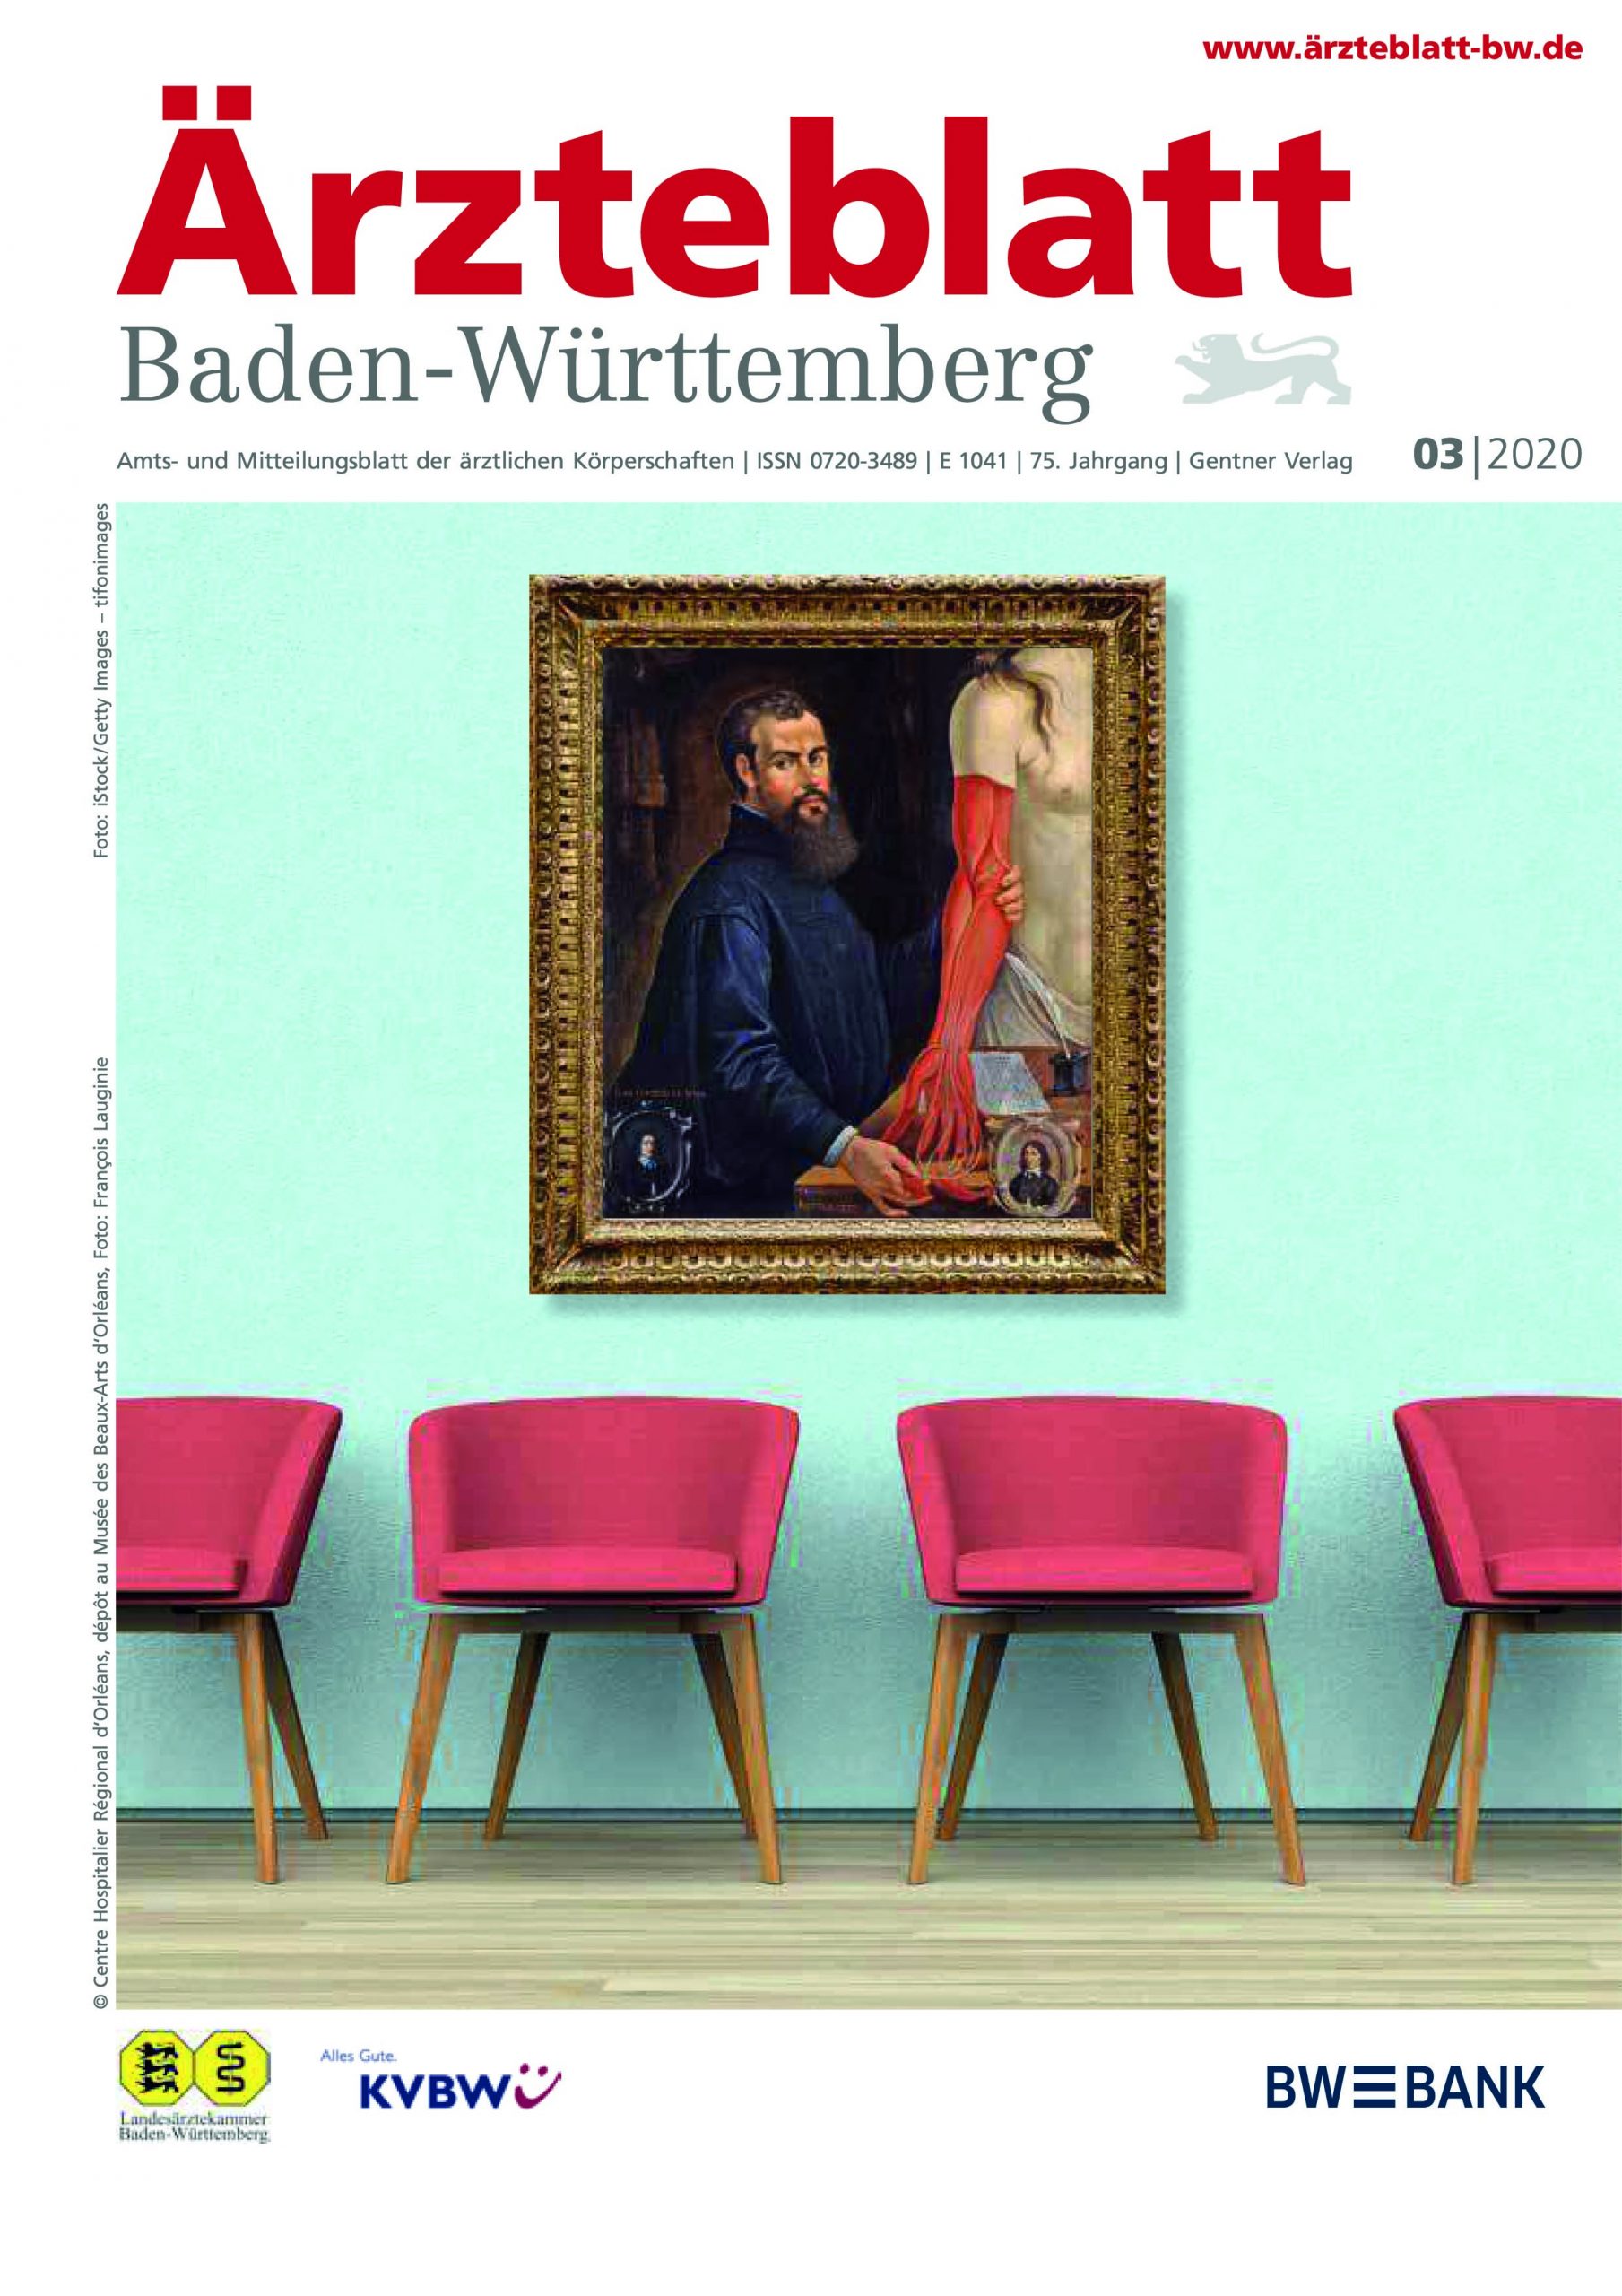 Baden-Württemberg: Therapeuten erarbeiten Fragen für medizinische Staatsexamina